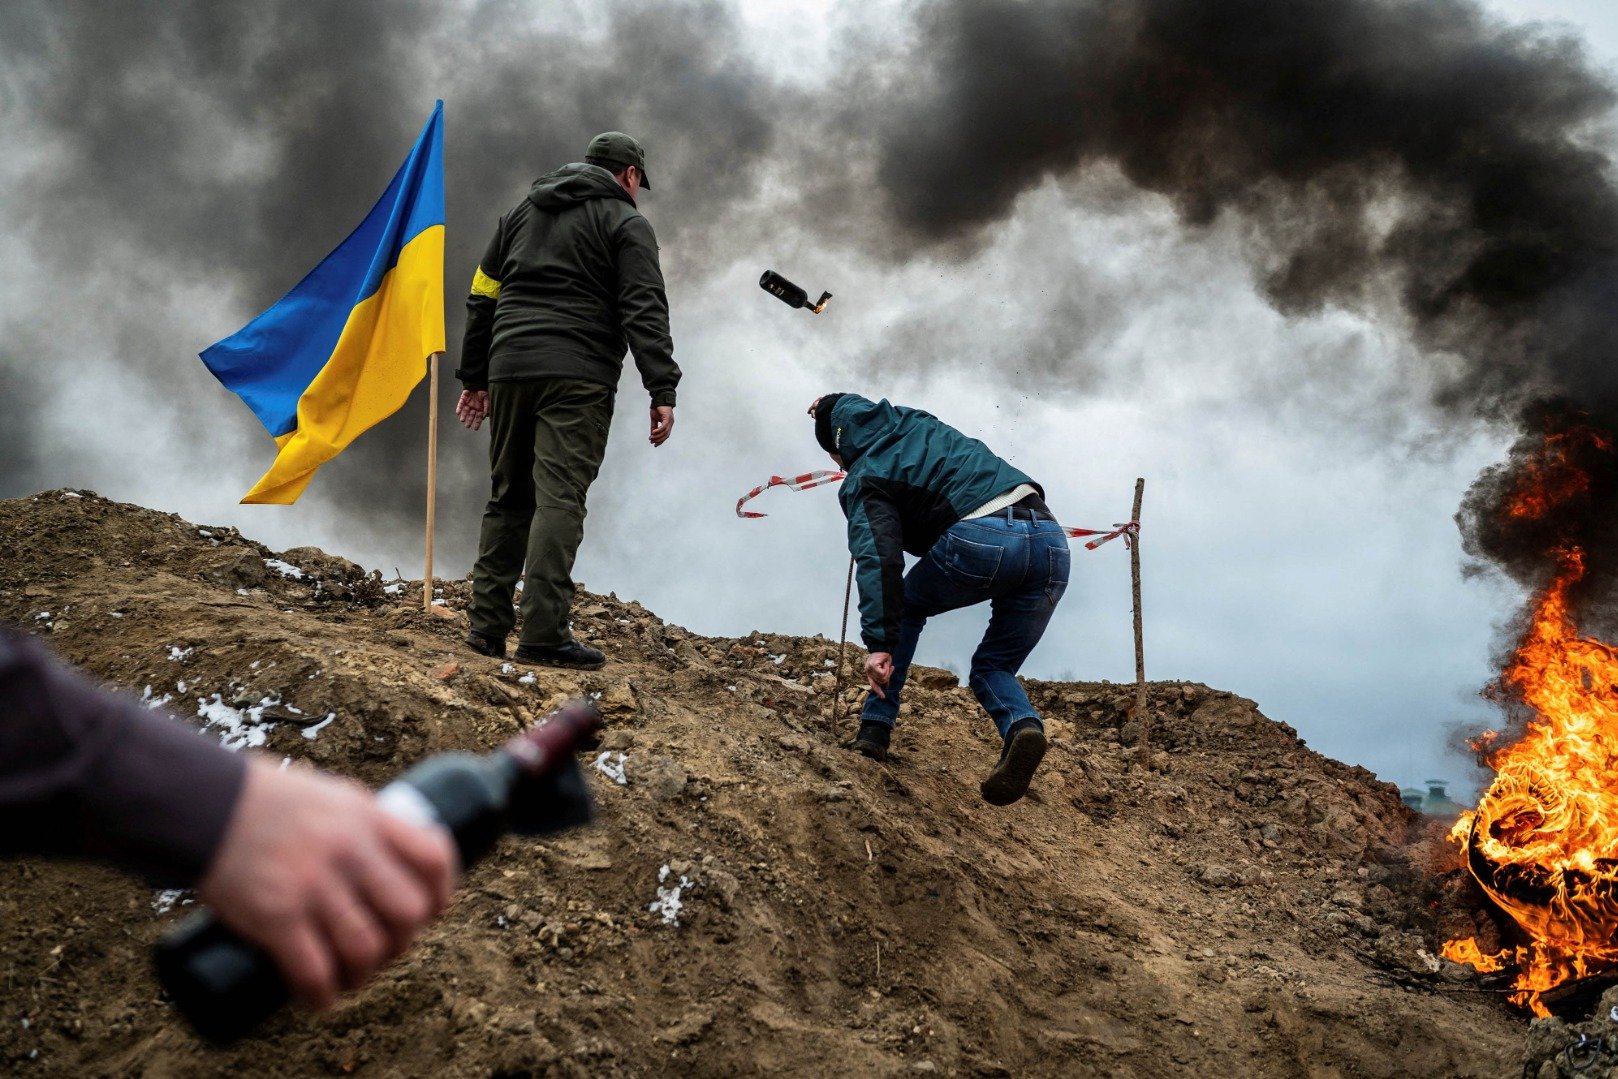 Seorang warga sipil berlatih melempar bom molotov untuk melindungi kota, saat invasi Rusia ke Ukraina terus berlanjut, di Zhytomyr, Ukraine, Selasa (1/3/2022). ANTARA FOTO/REUTERS/Viacheslav Ratynskyi/WSJ/cfo